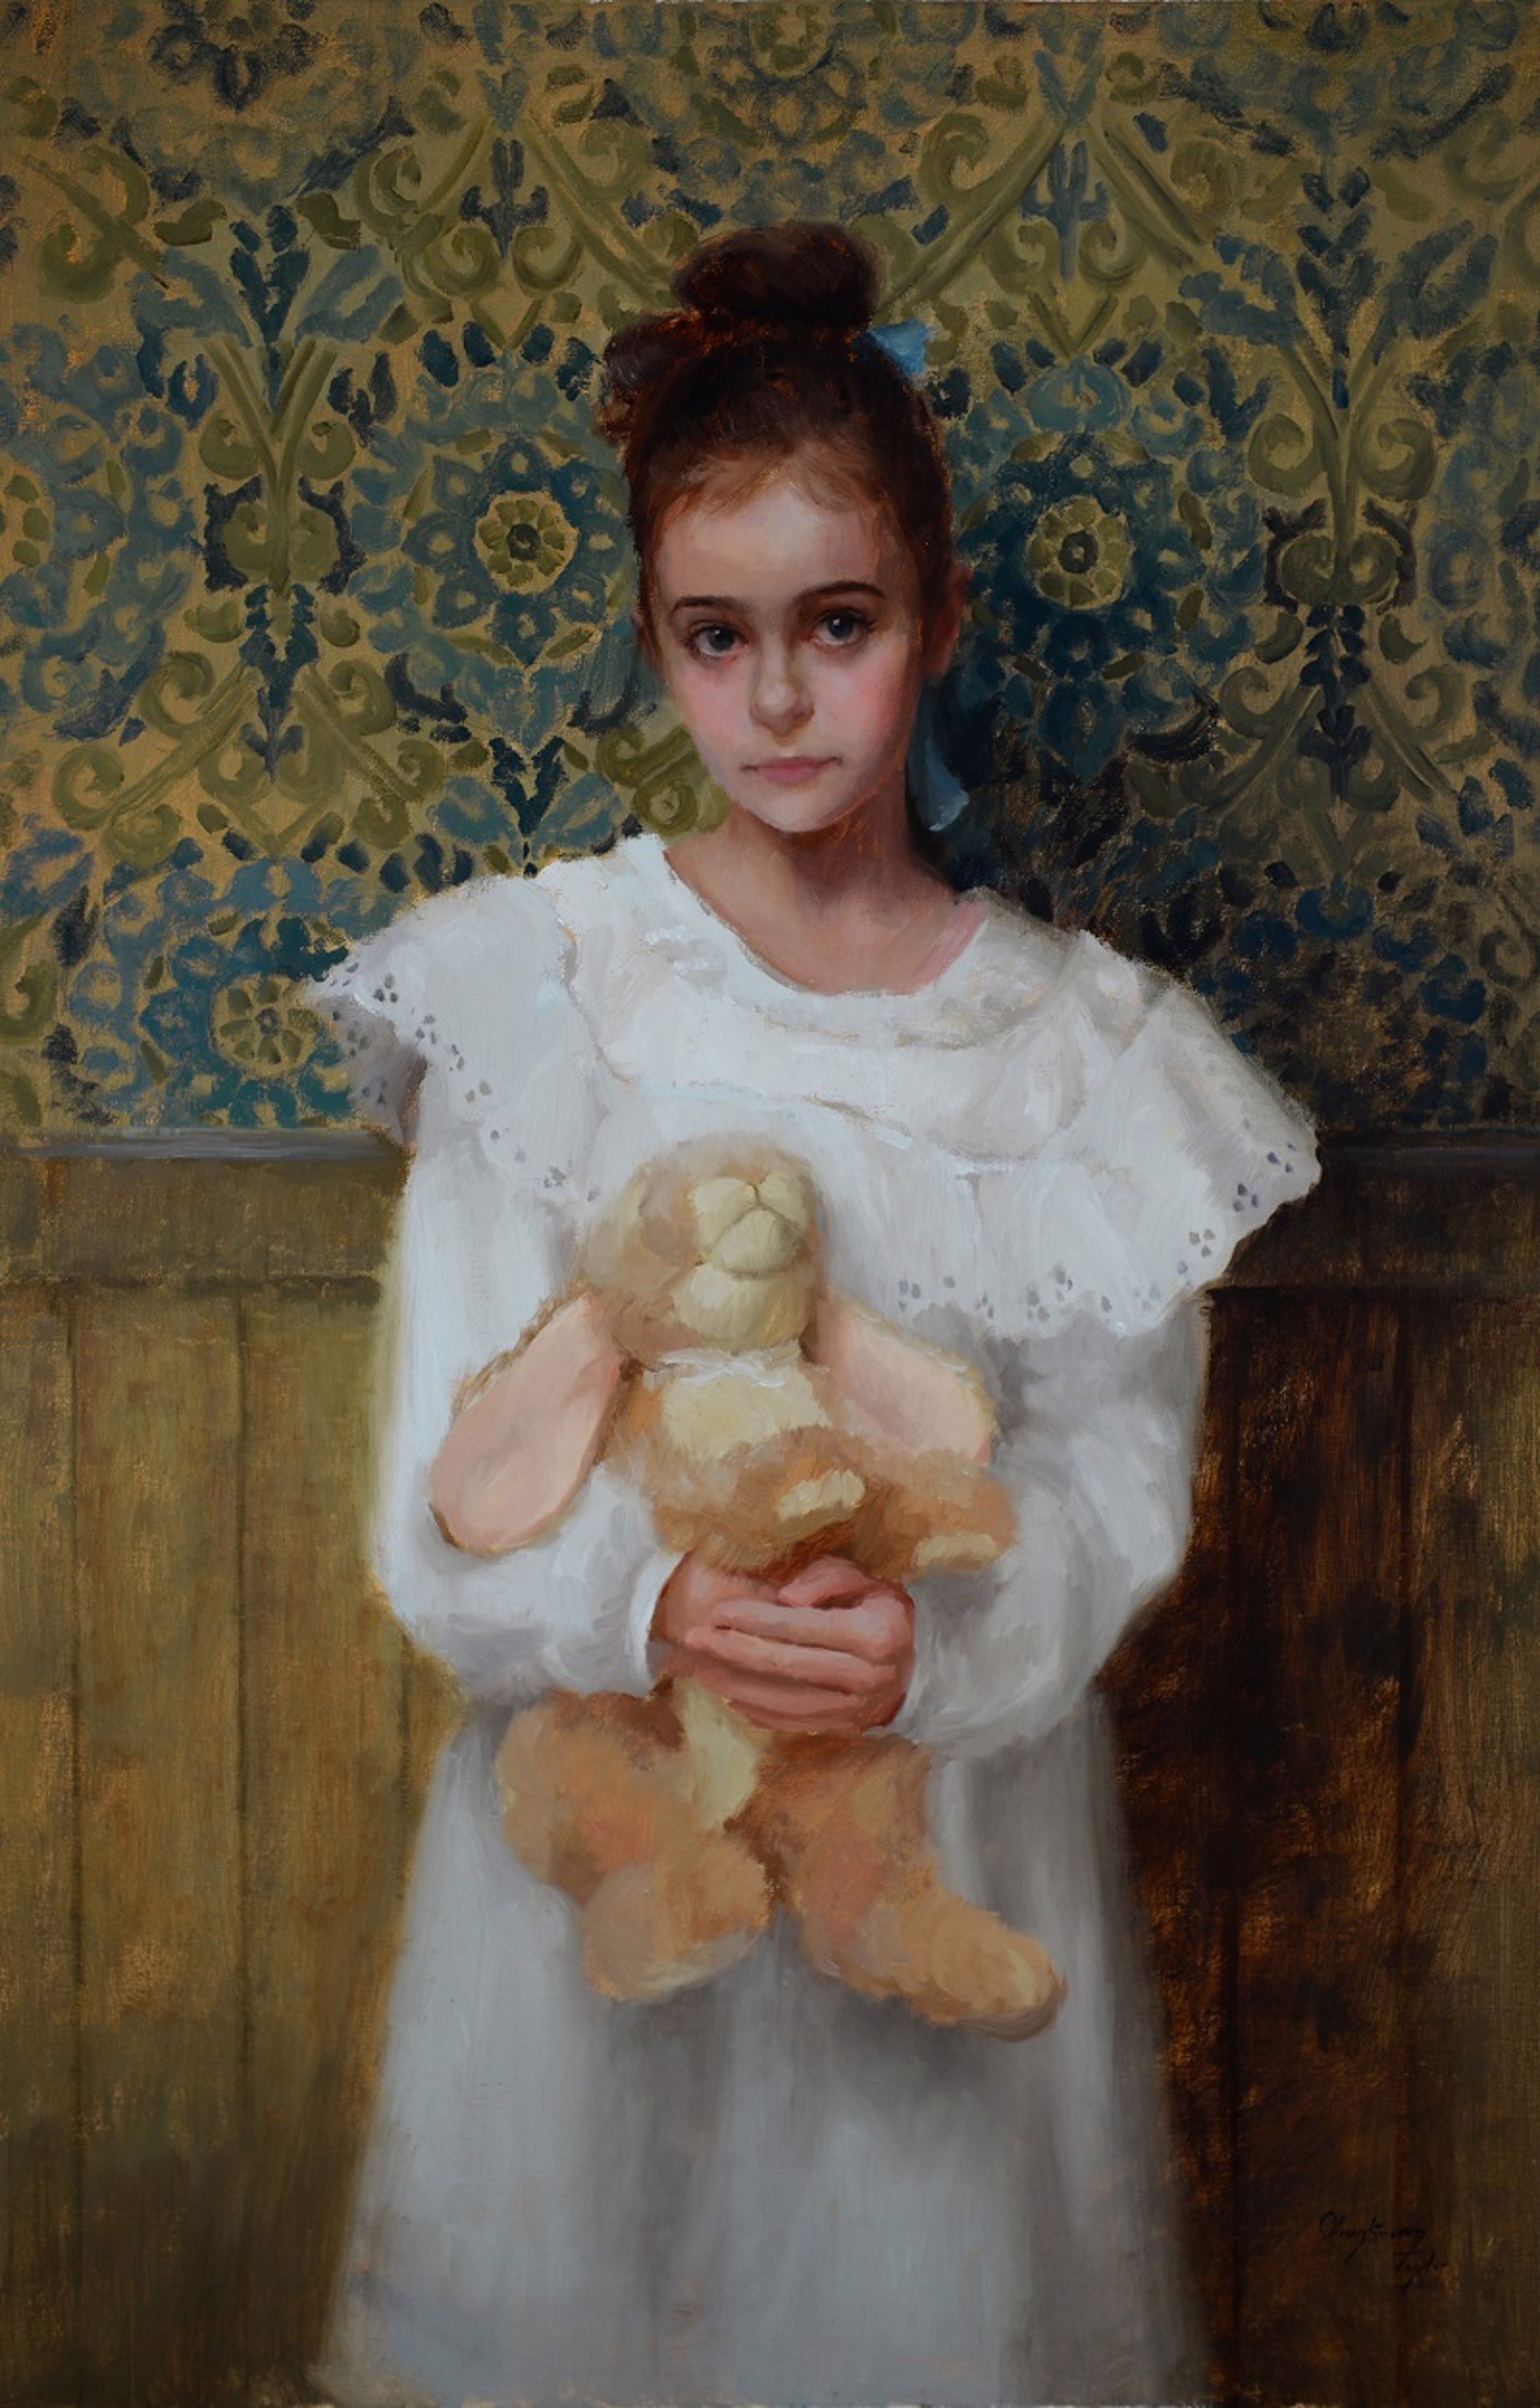 Vivien's Velveteen Rabbit by Marci Oleszkiewicz